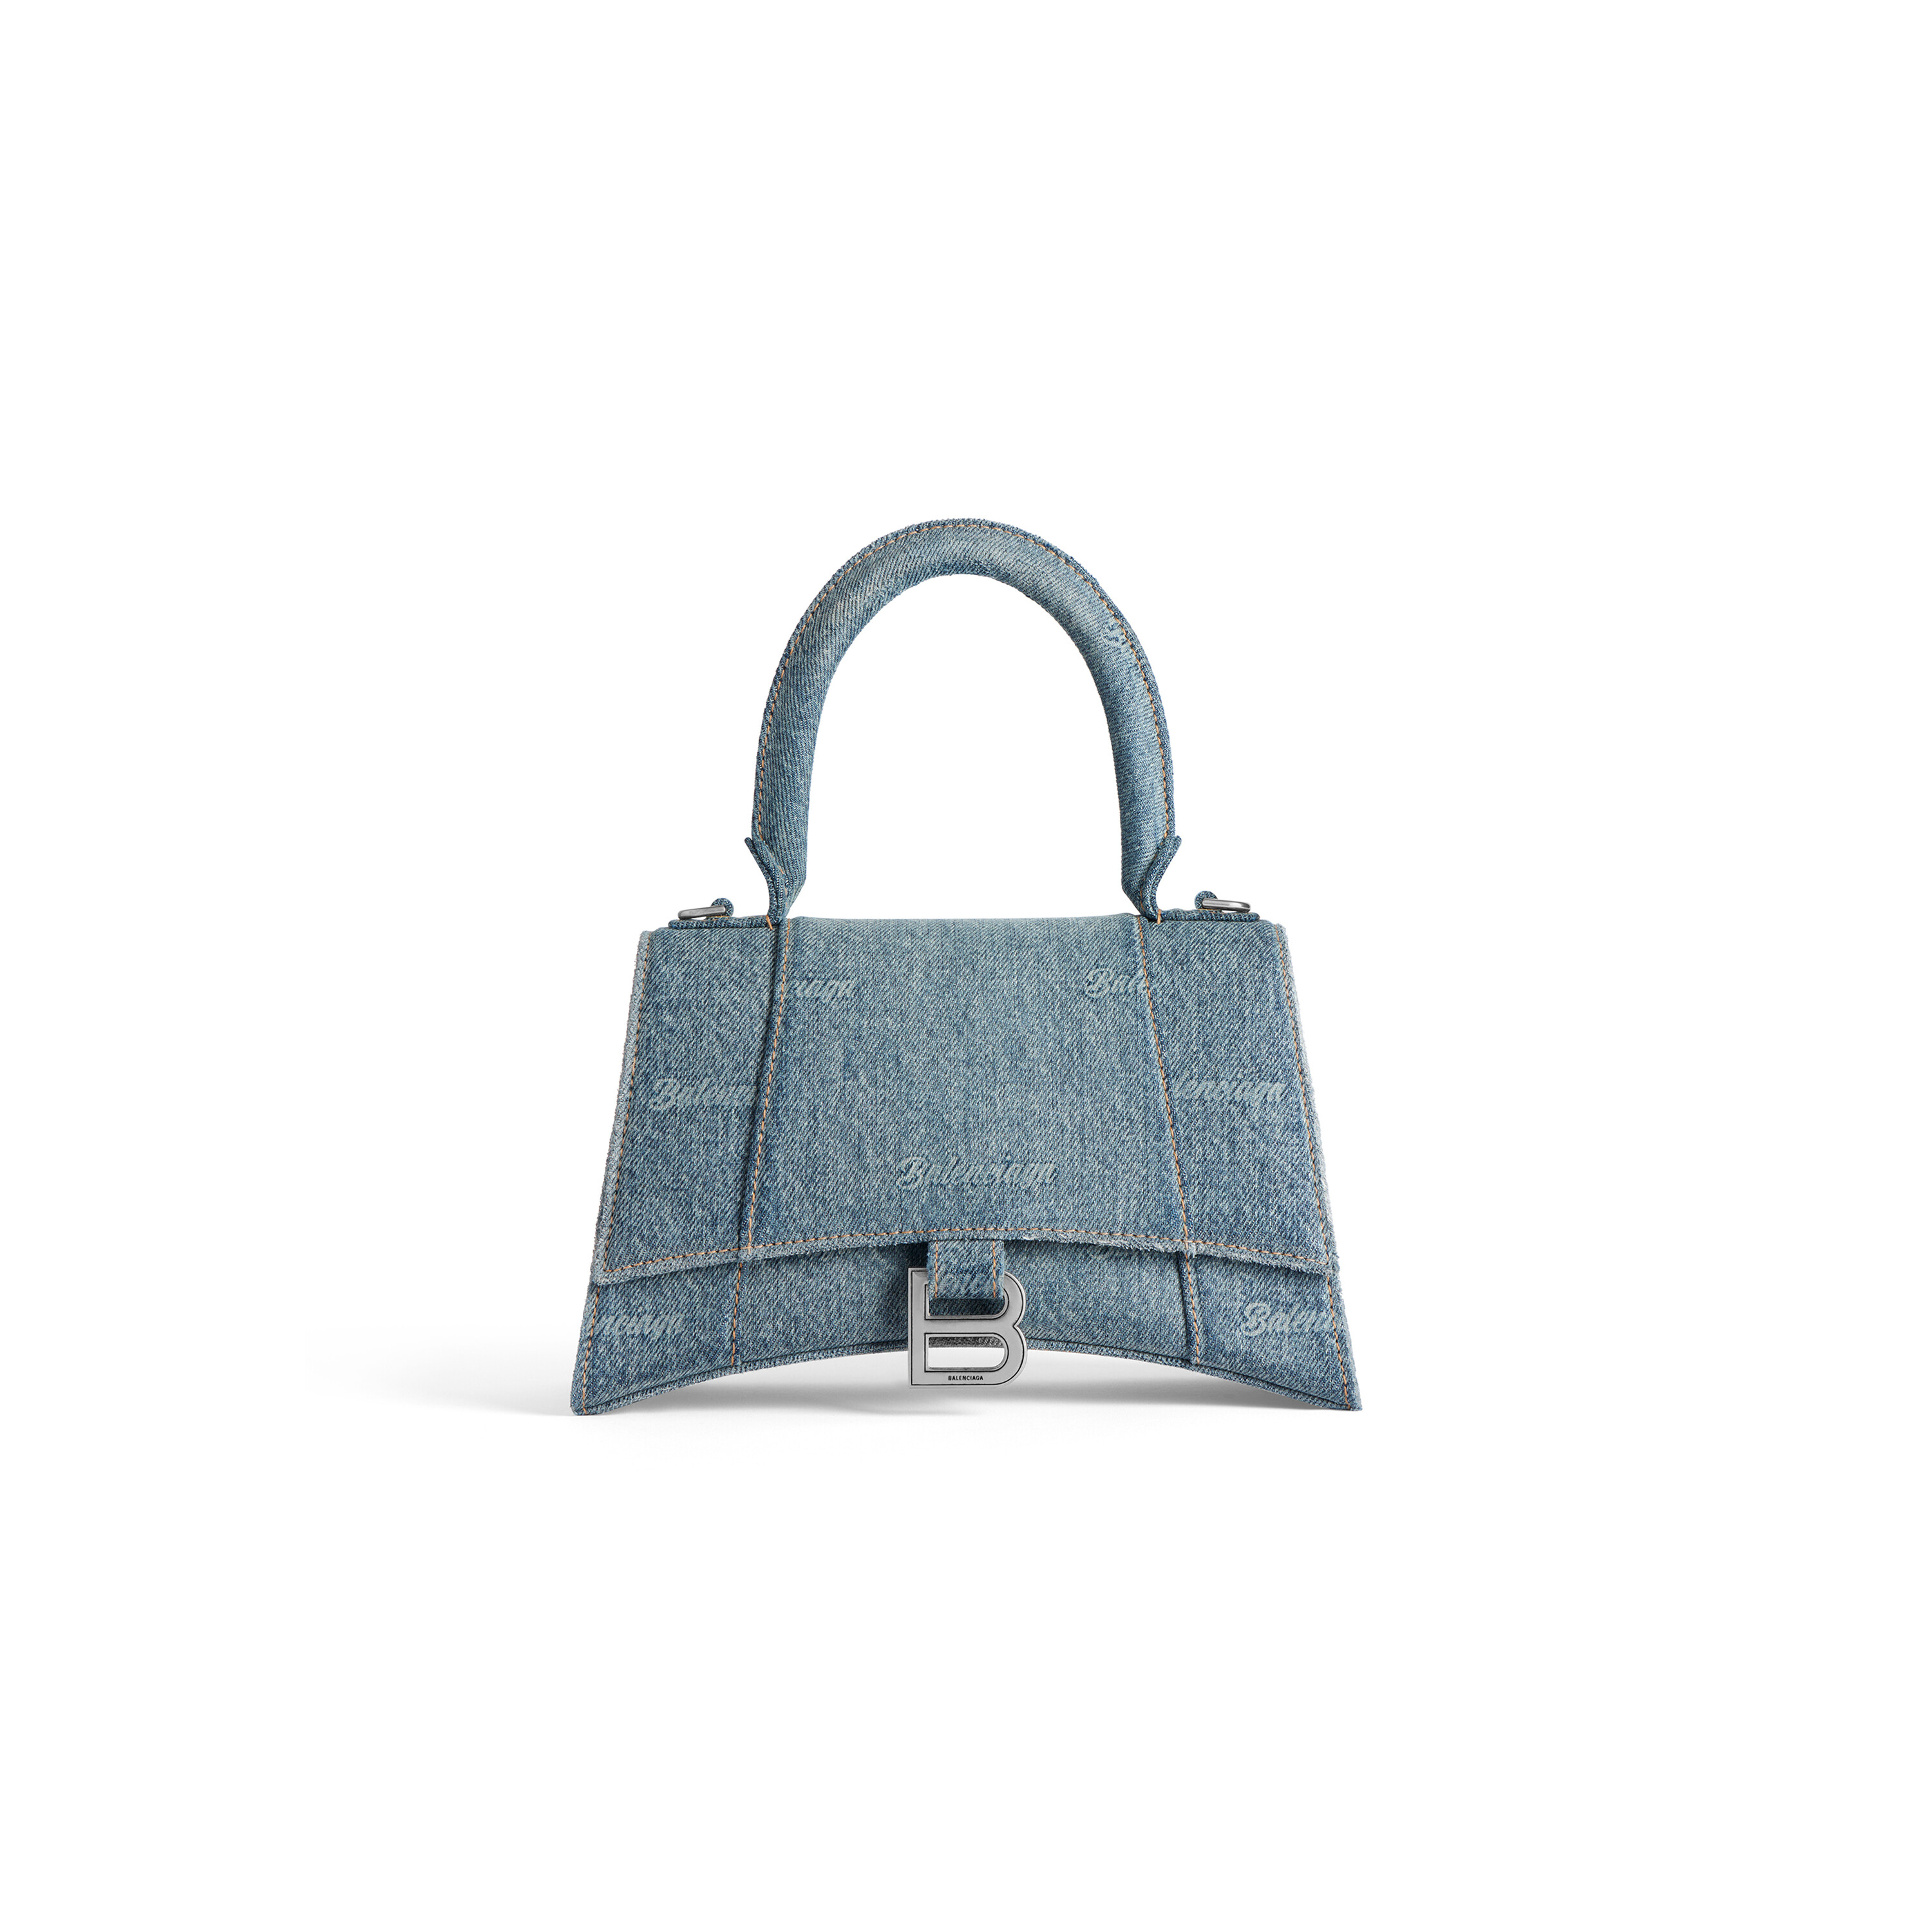 Women's Hourglass Small Handbag Girly Allover Denim in Light Blue 